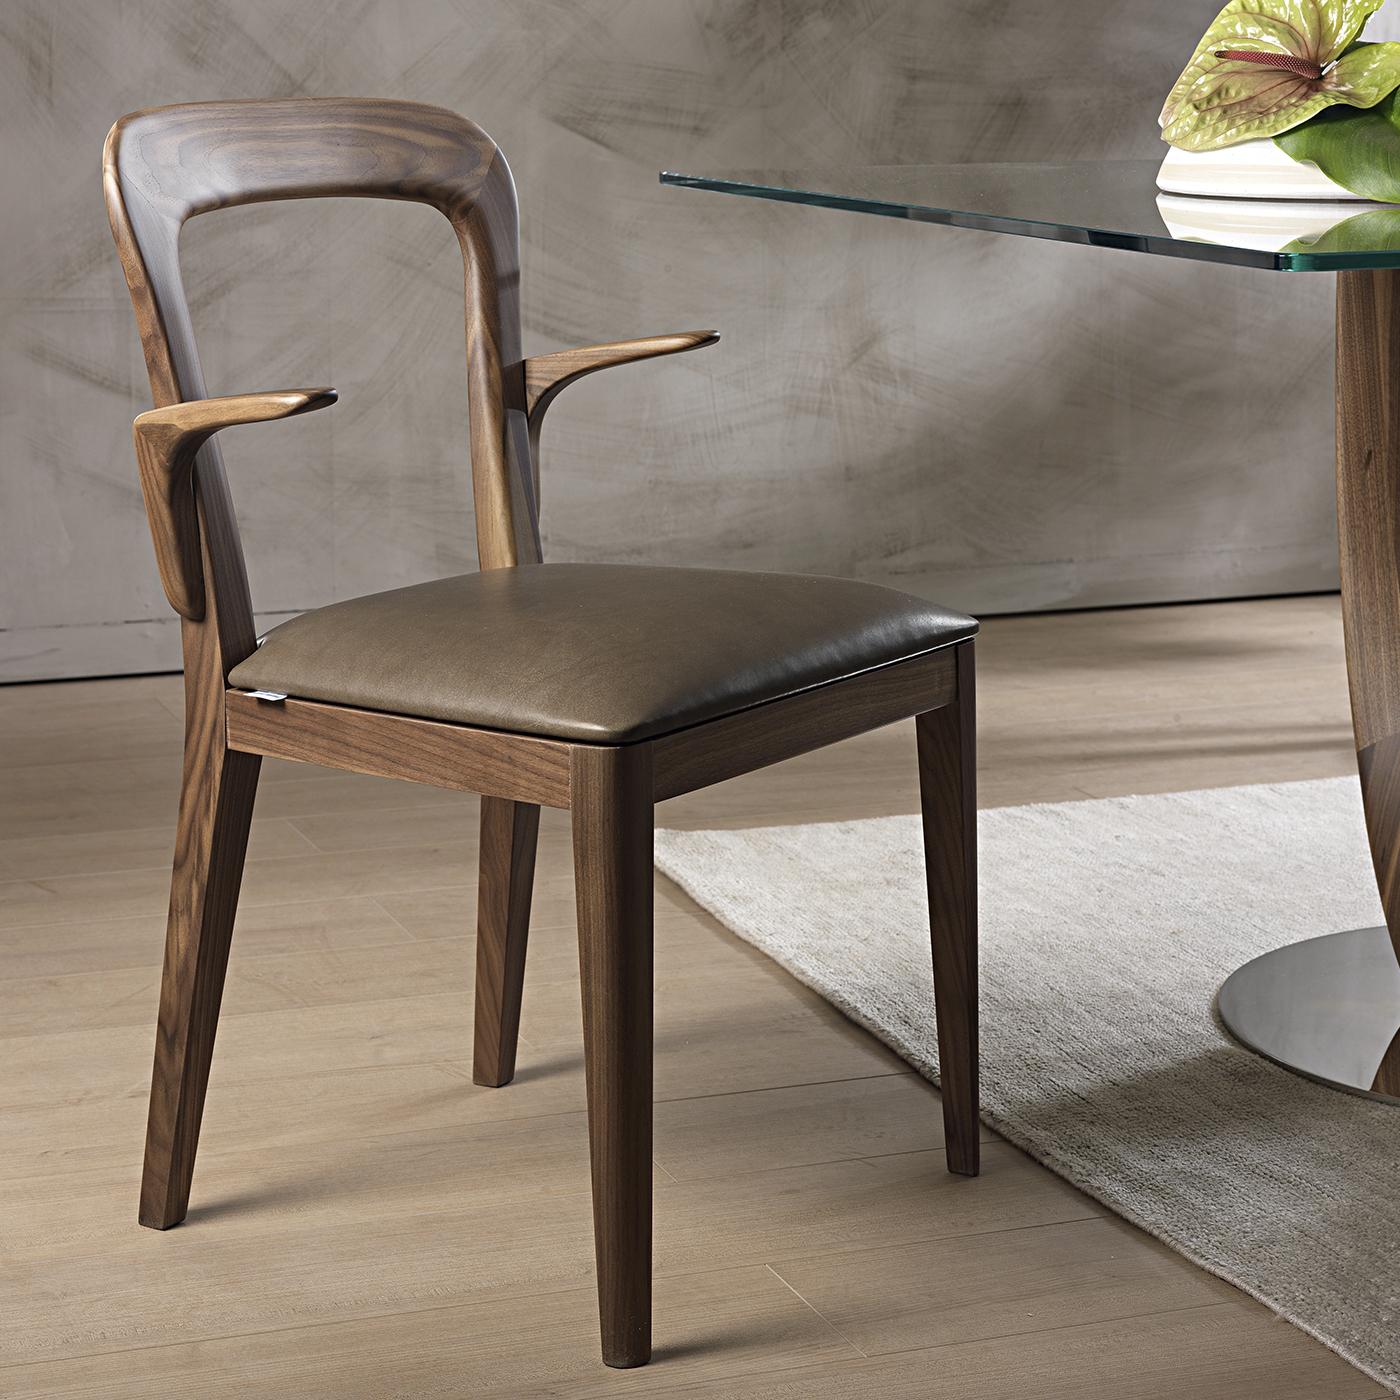 Cet élégant design de Stefano Bigi fait partie de la collection de chaises et de fauteuils Gaya. La silhouette intemporelle est ornée des détails des petits accoudoirs, à la fois un élément fonctionnel et un accent décoratif saisissant qui confère à